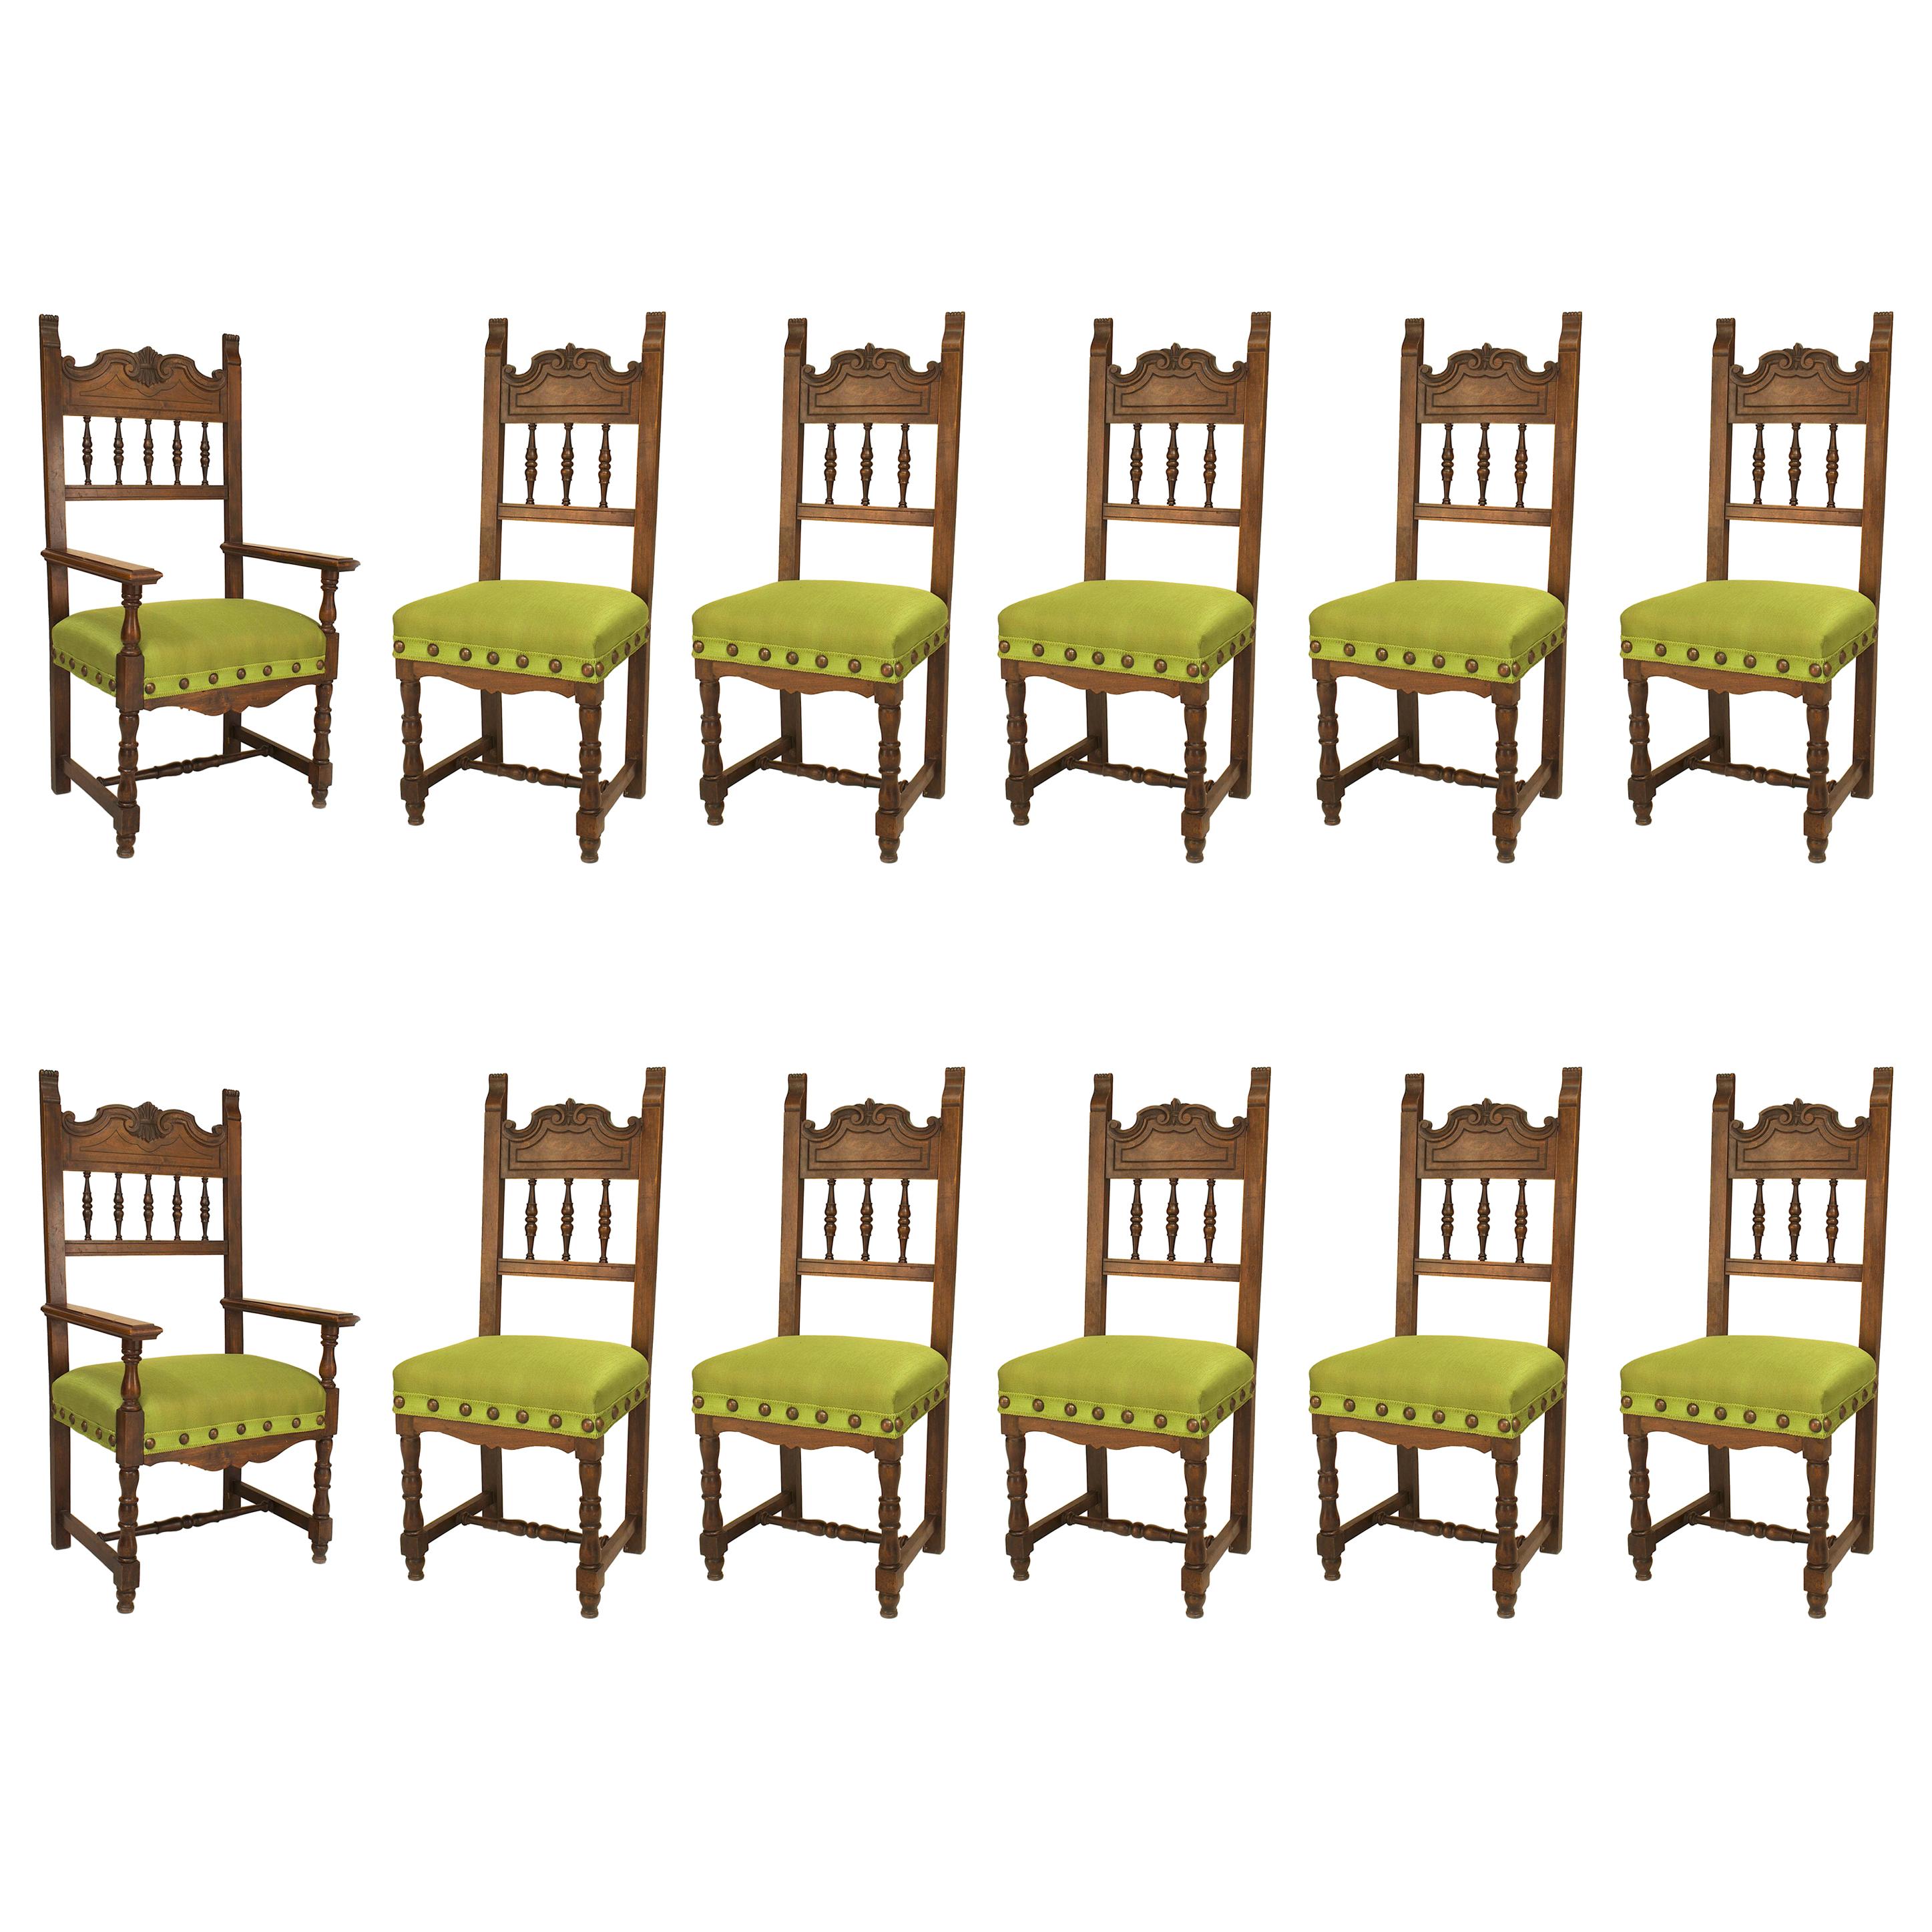 Ensemble de 12 chaises espagnoles Renaissance vertes tapissées en vente